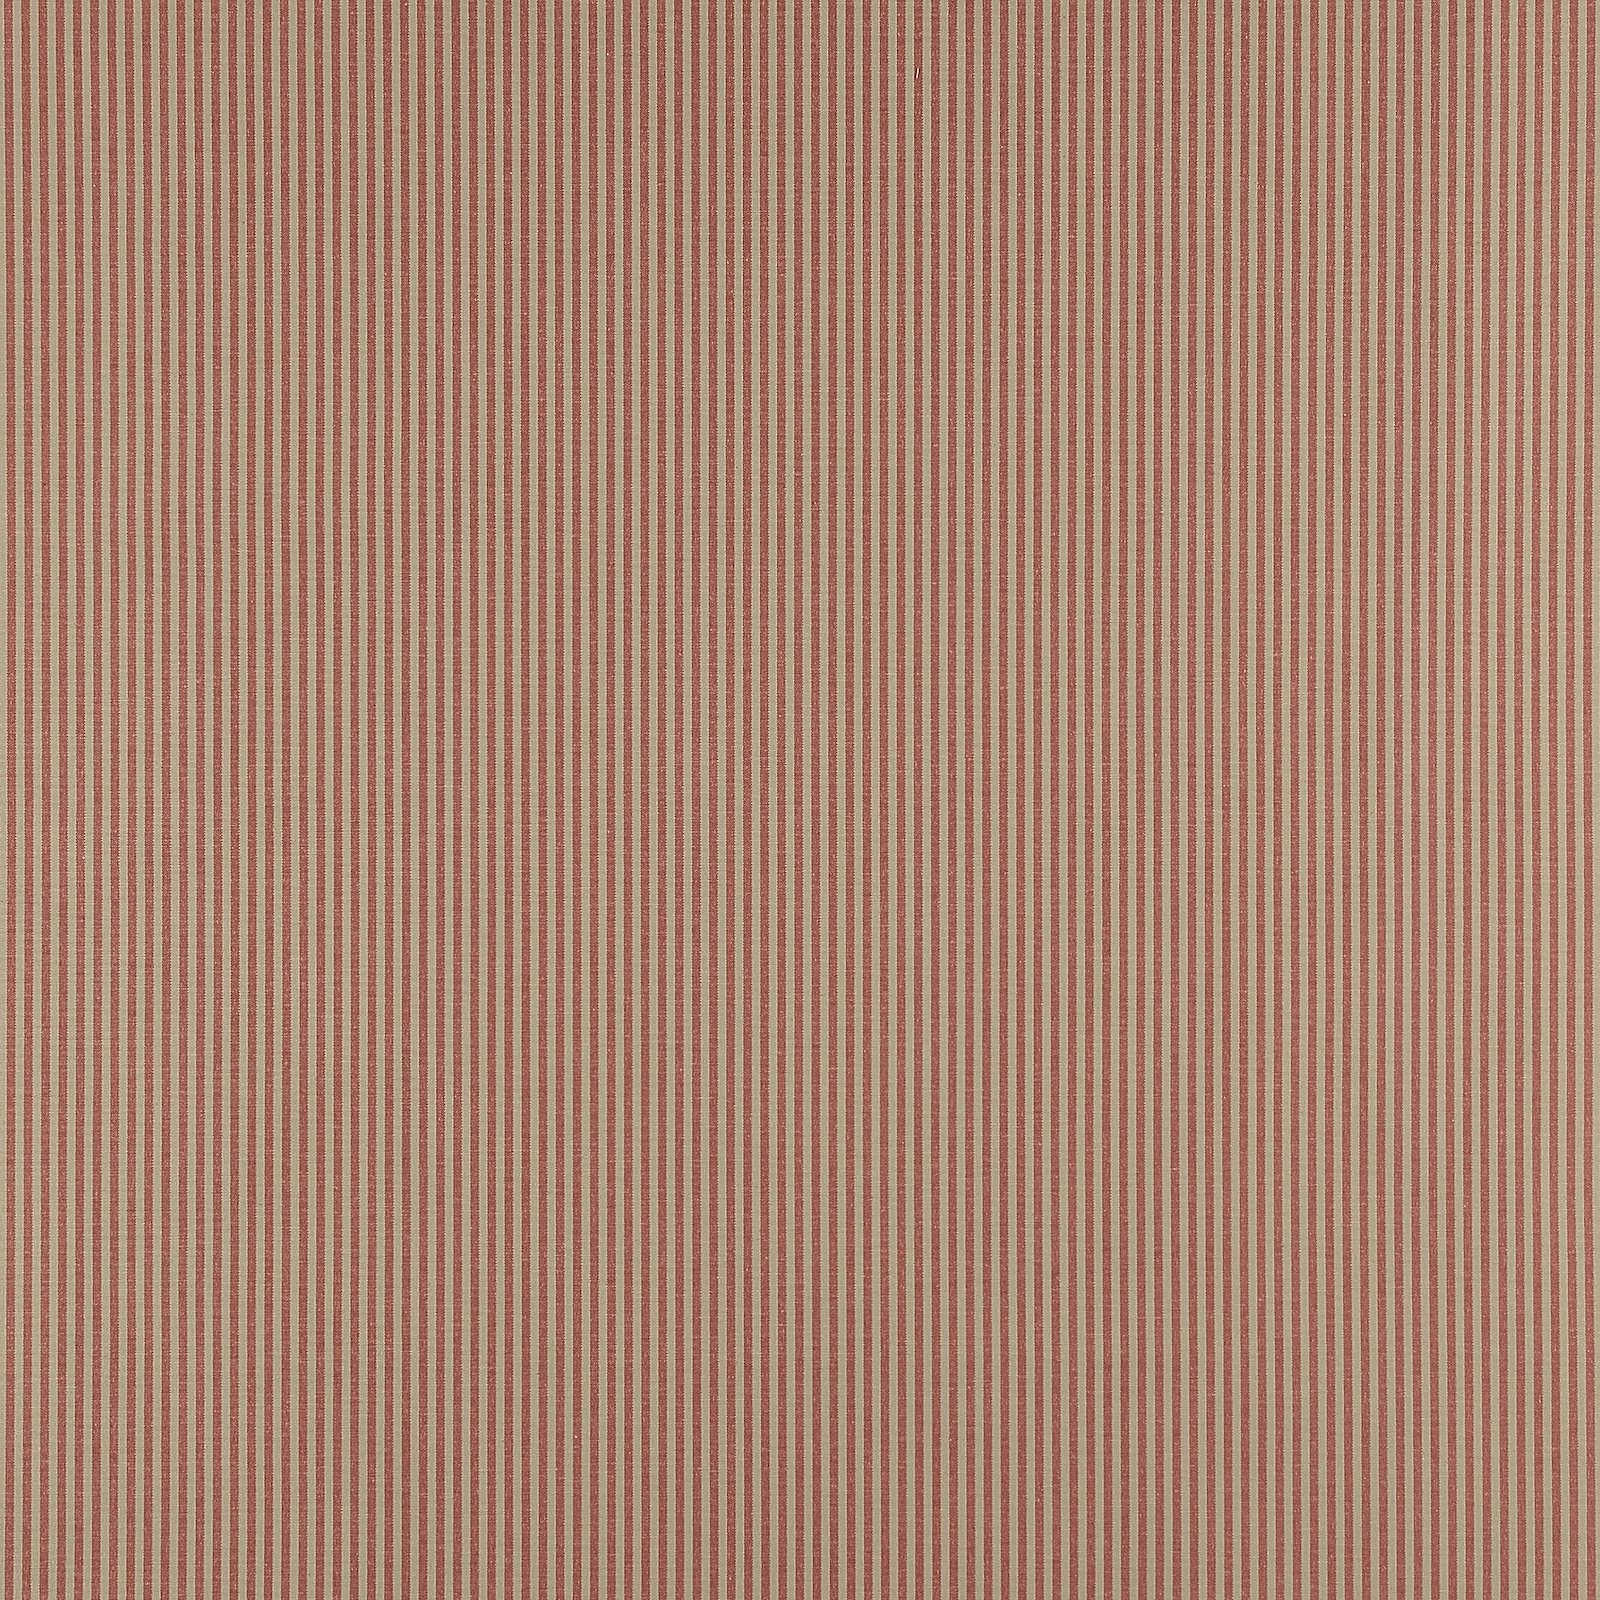 Garngefärbt, Rot/Sand, schmale Streifen 822324_pack_sp